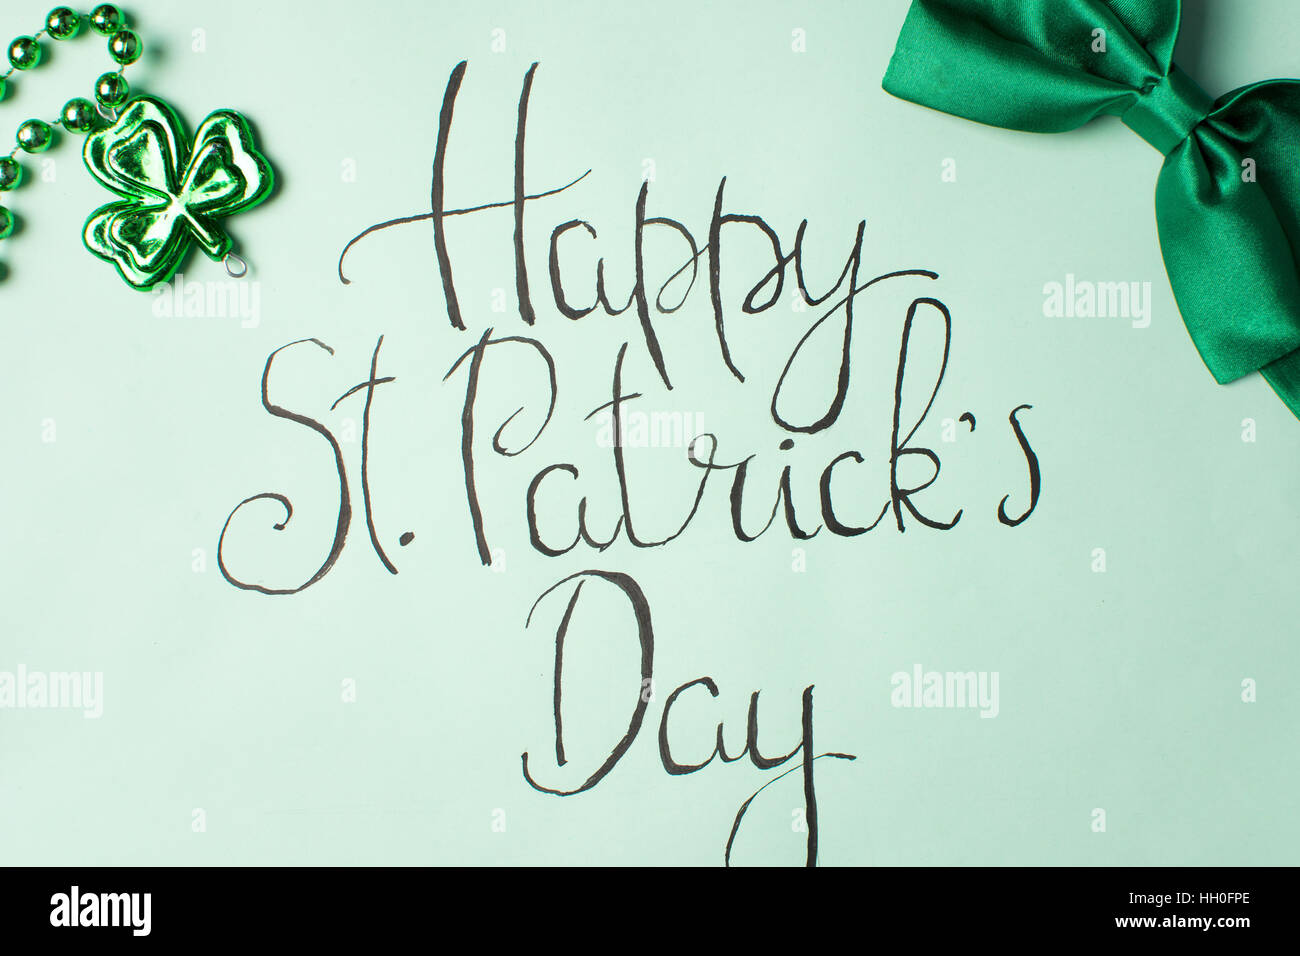 Feliz día de San Patricio tarjetas de caligrafía y accesorios verde Foto de stock